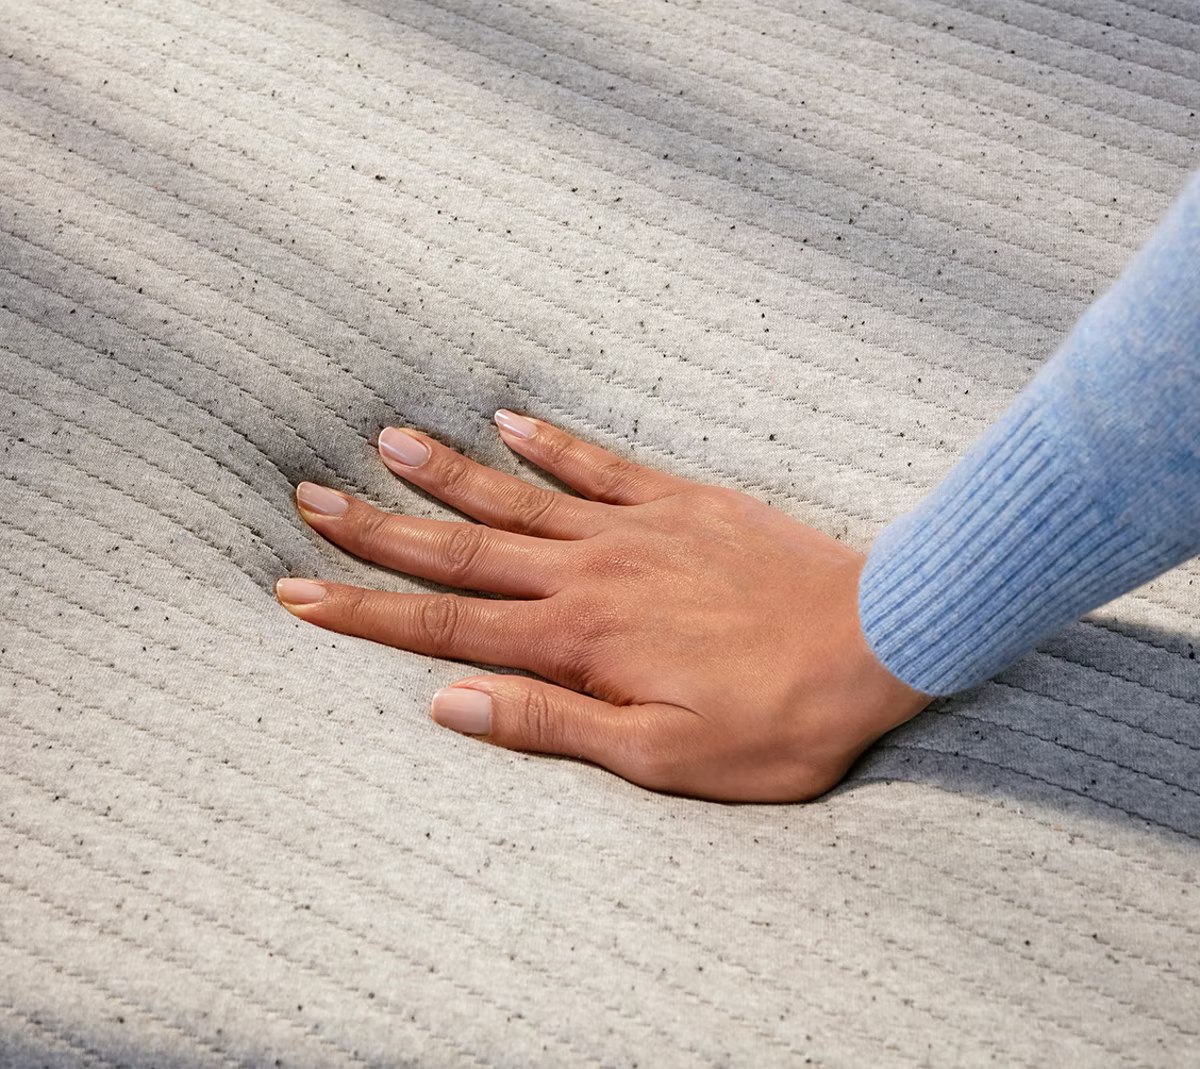 a hand pressing a foam mattress